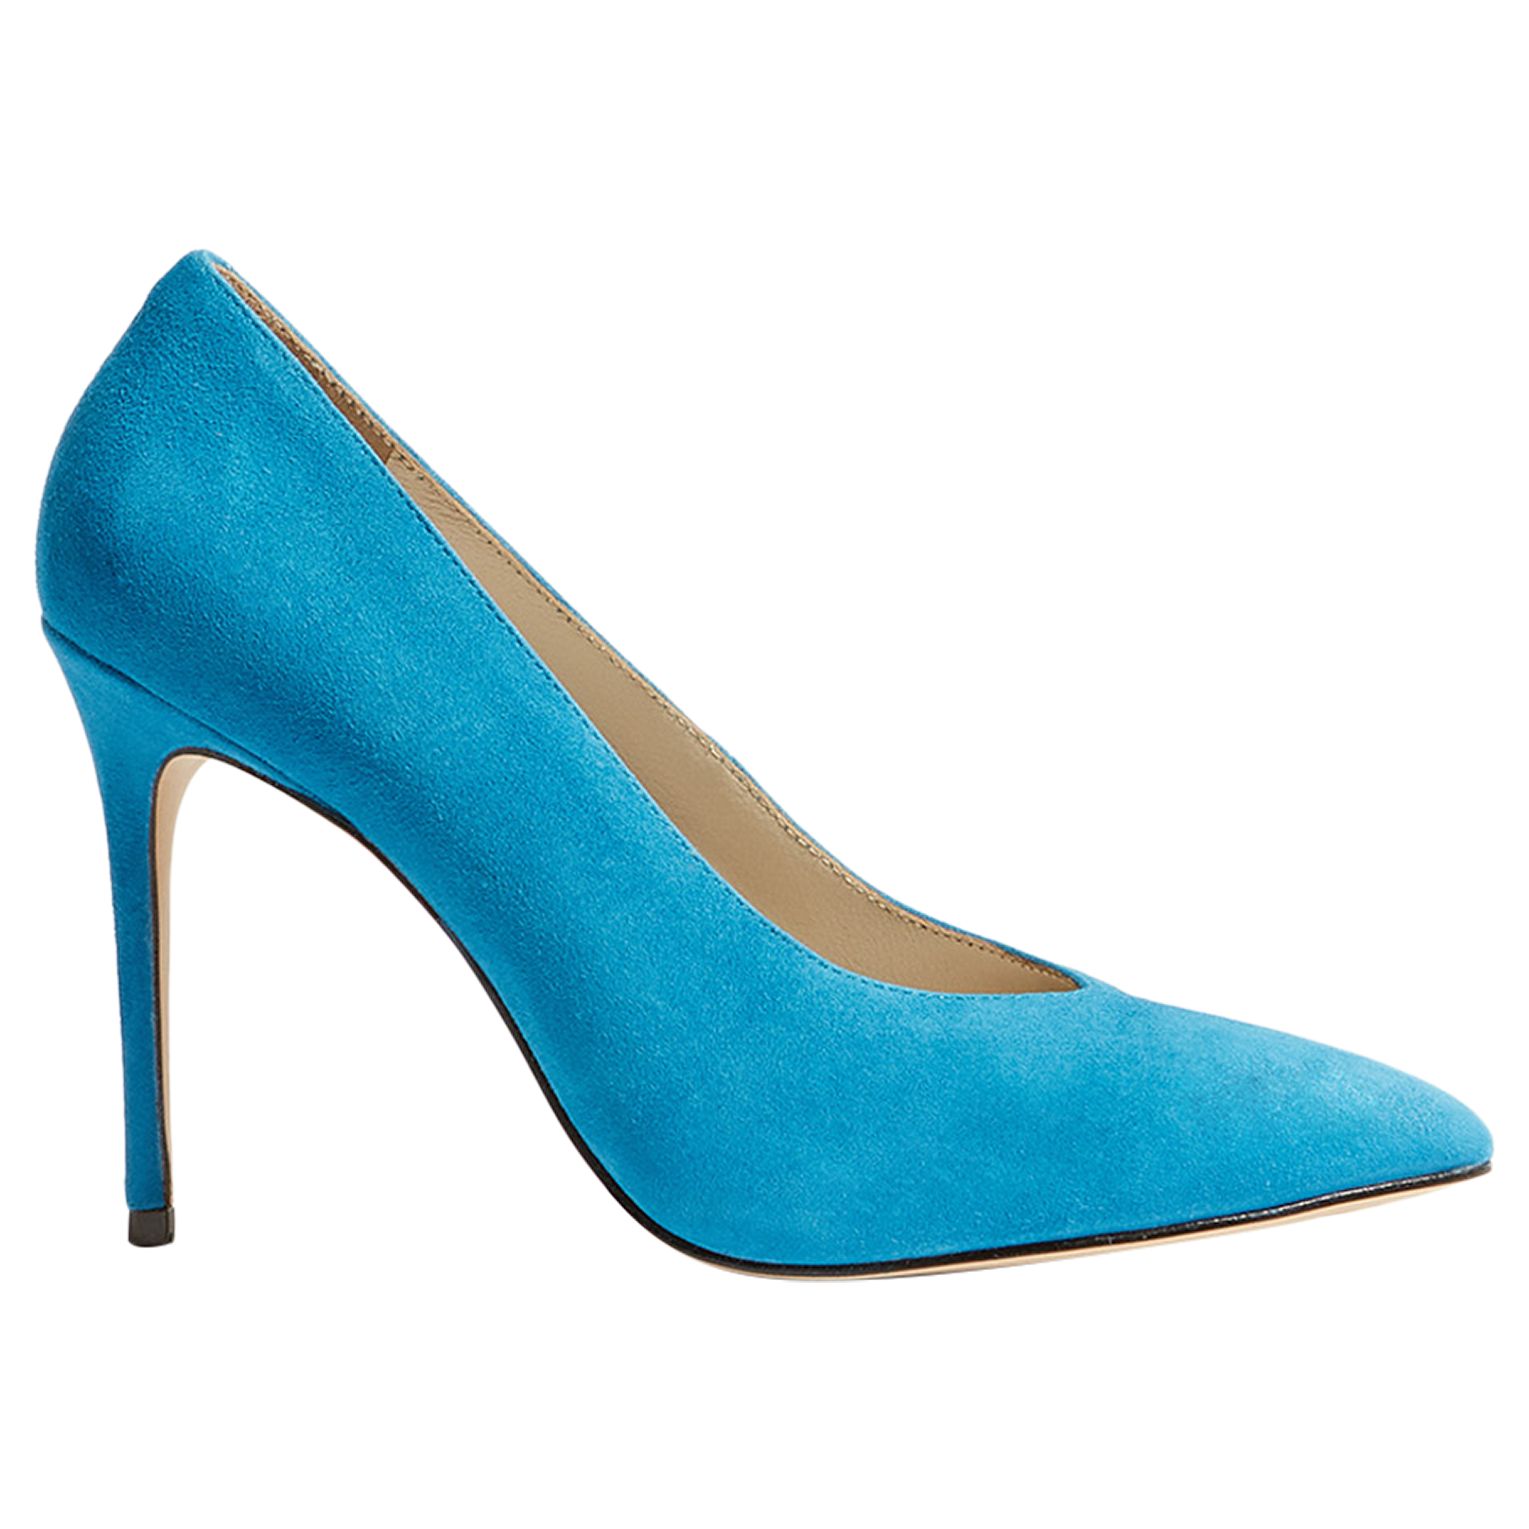 Karen Millen Stiletto Court Shoes, Blue at John Lewis & Partners